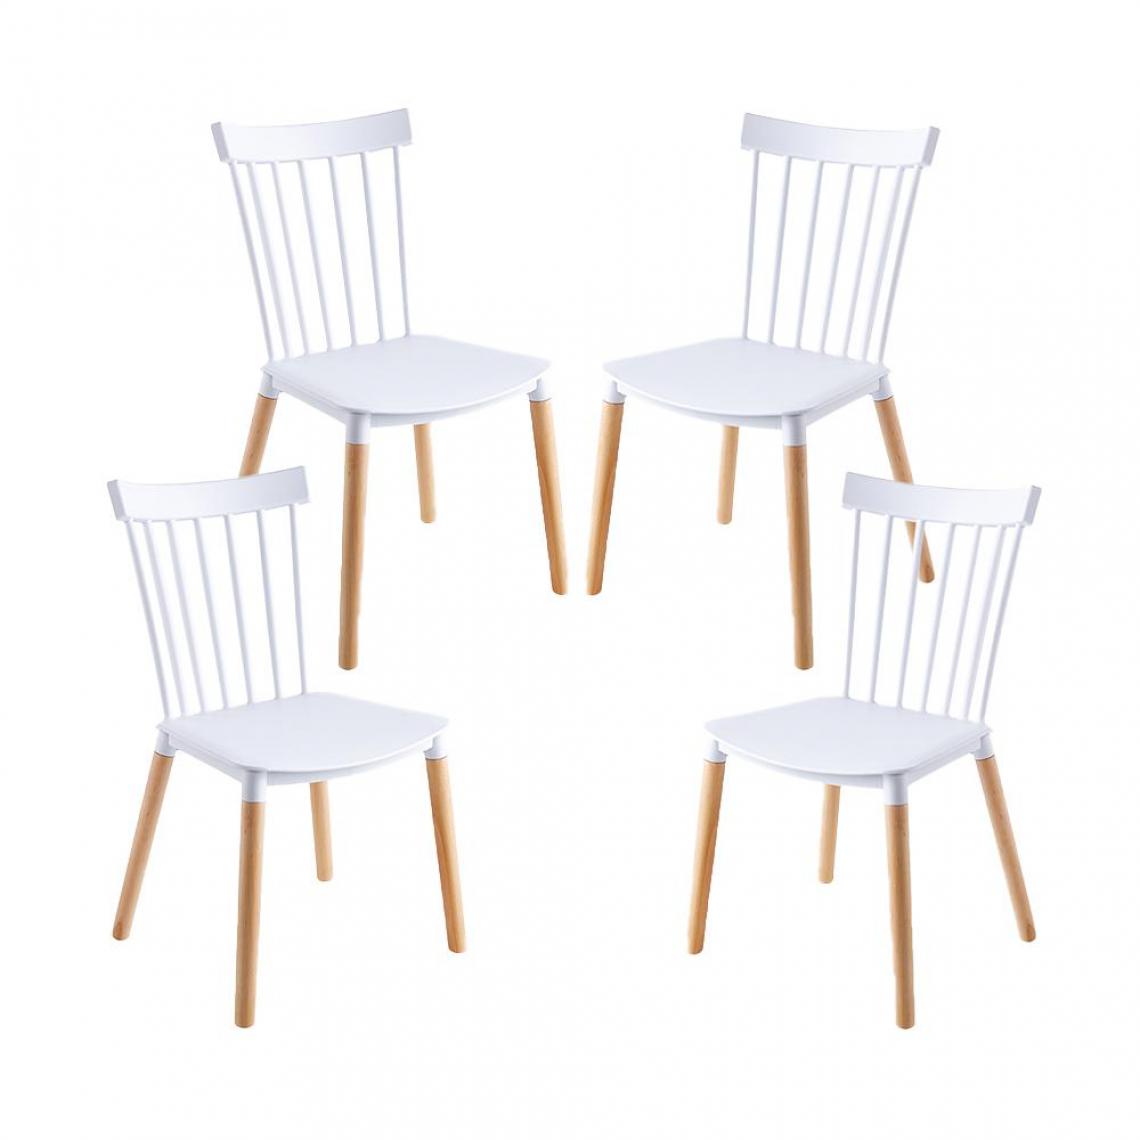 Red Deco - Lot de 4 chaises VICTORIA blanc pieds en bois style scandinave - Chaises